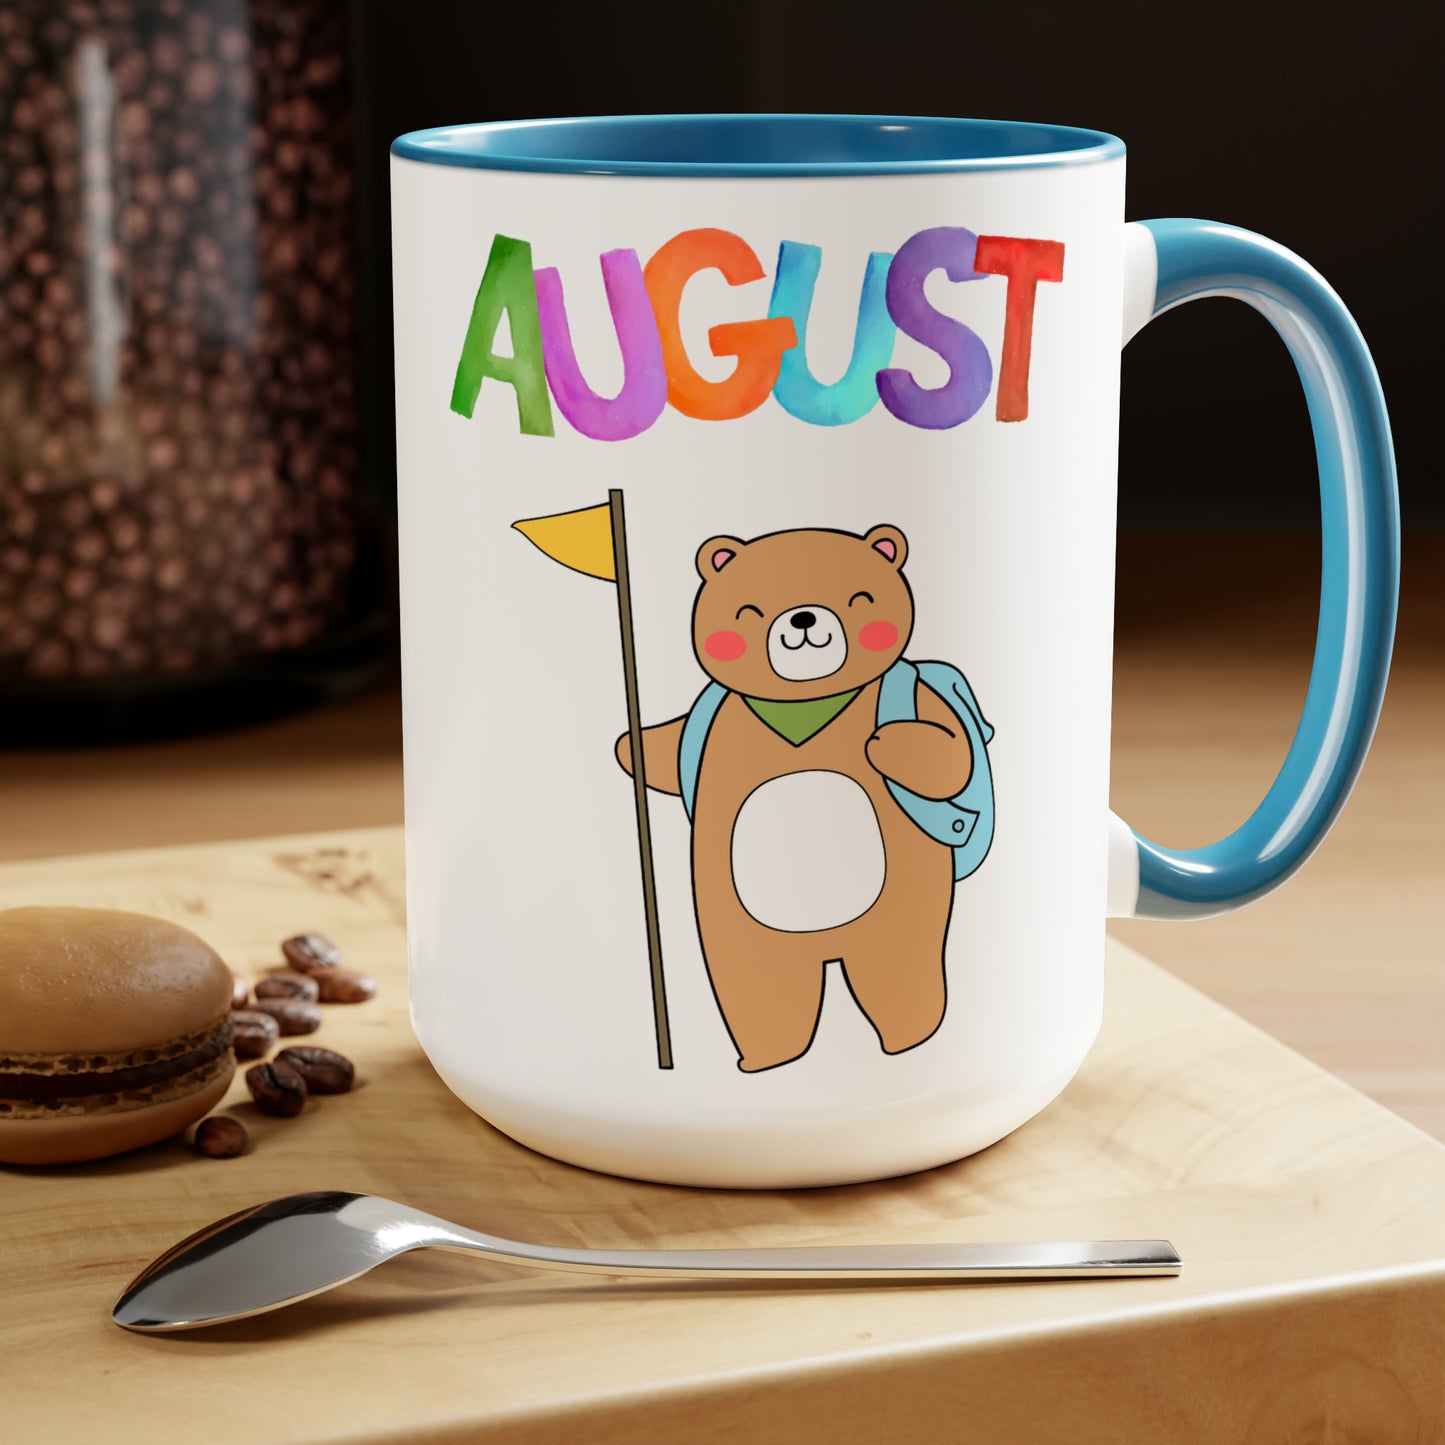 August Two-Tone Coffee Mugs, 15oz